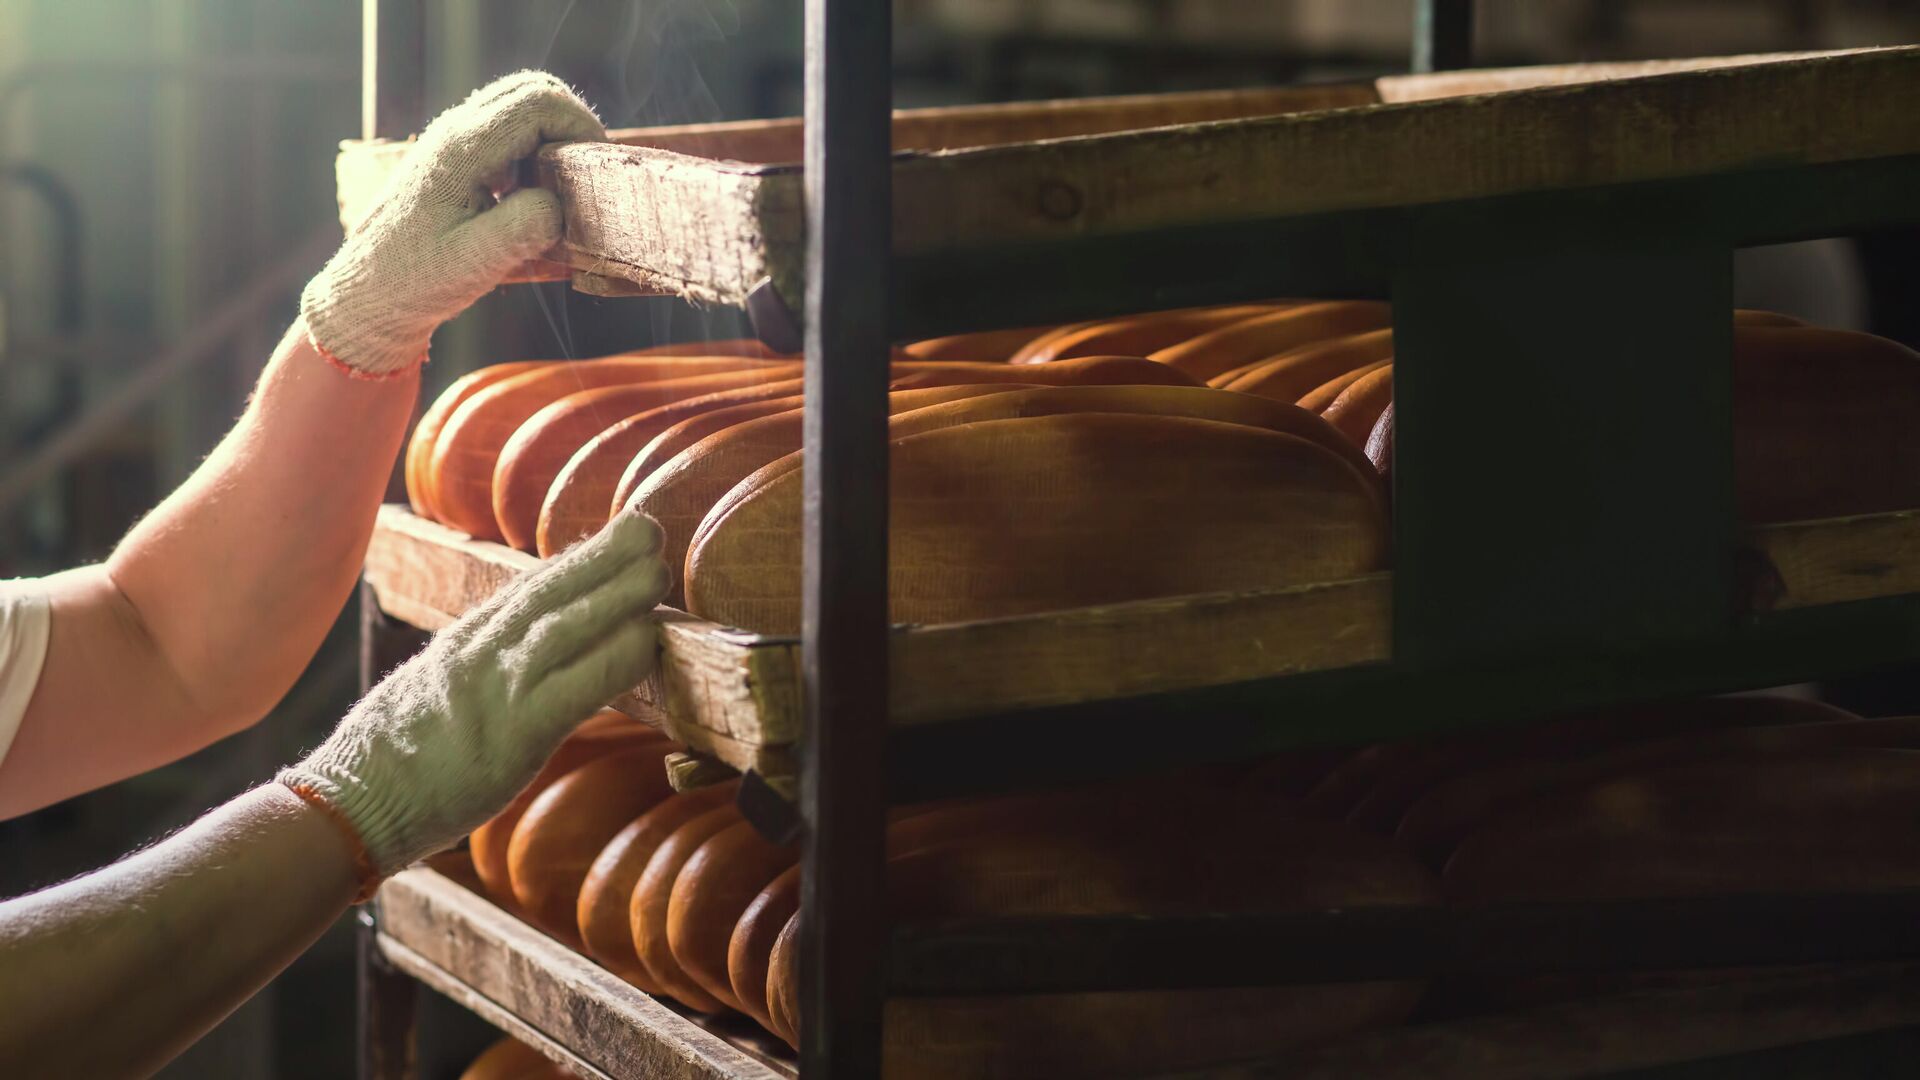 На Украине ввели временное госрегулирование цен на пшеничный хлеб